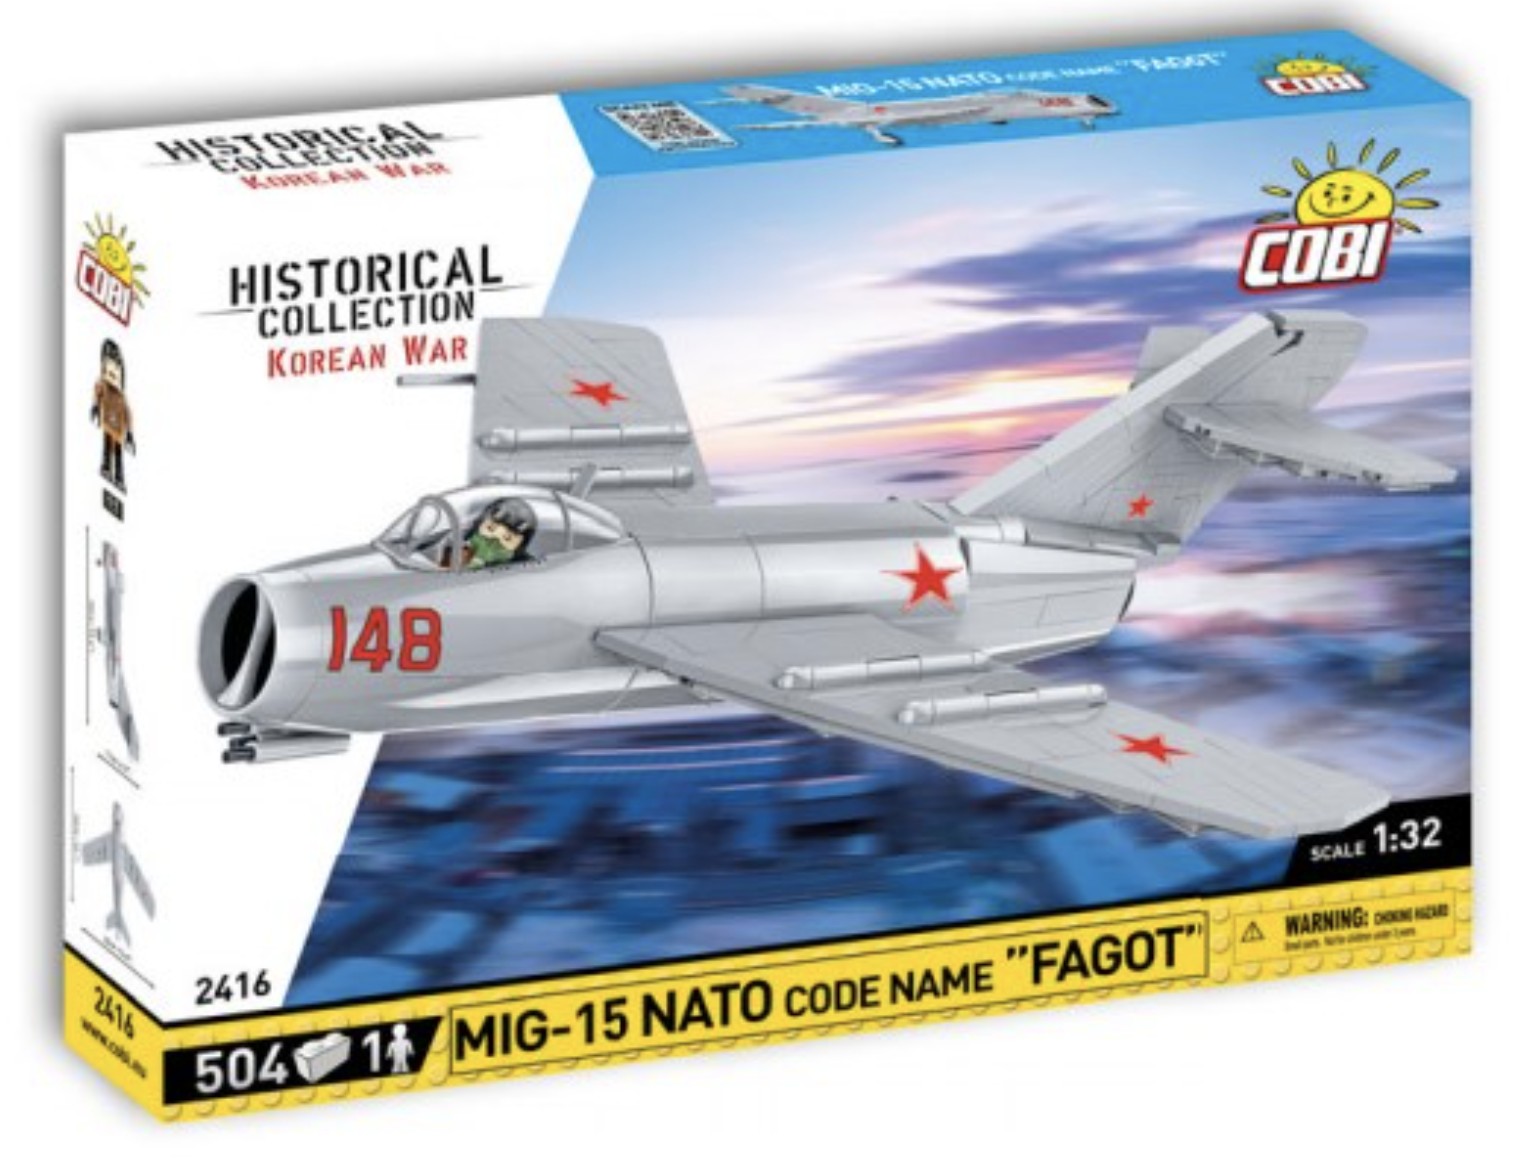 2416 - MiG-15  Fagot